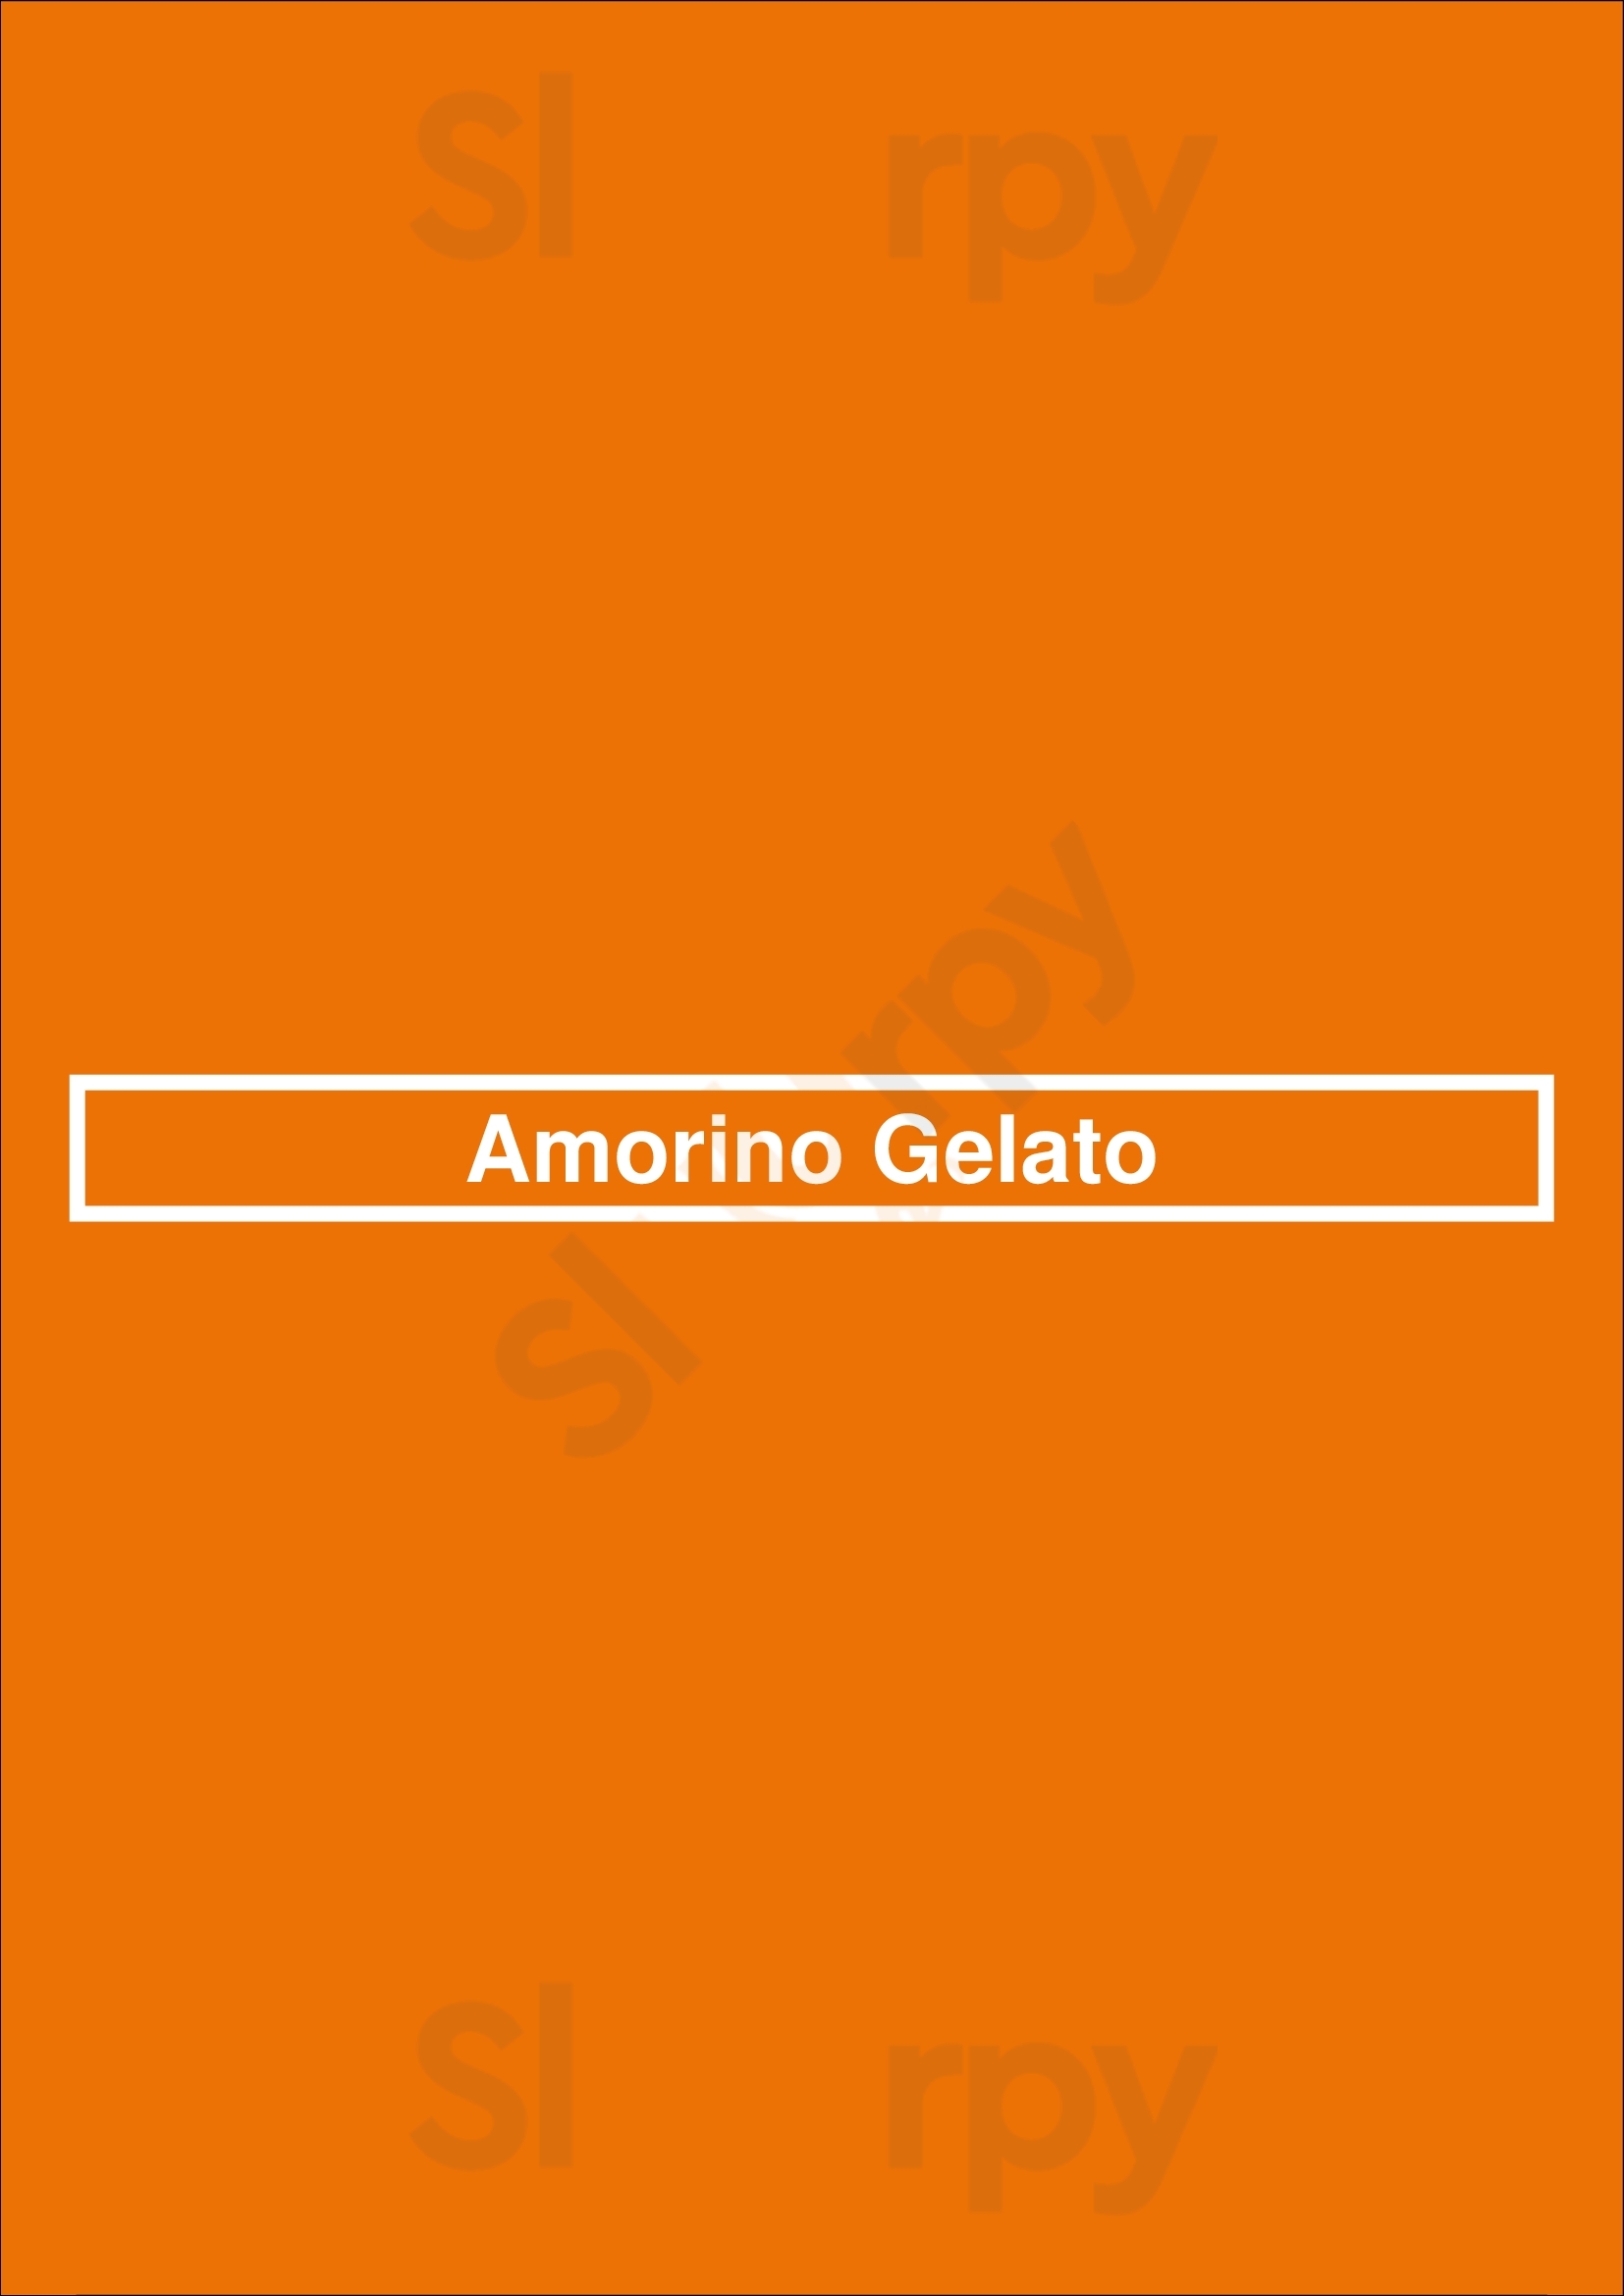 Amorino Gelato Fort Worth Menu - 1